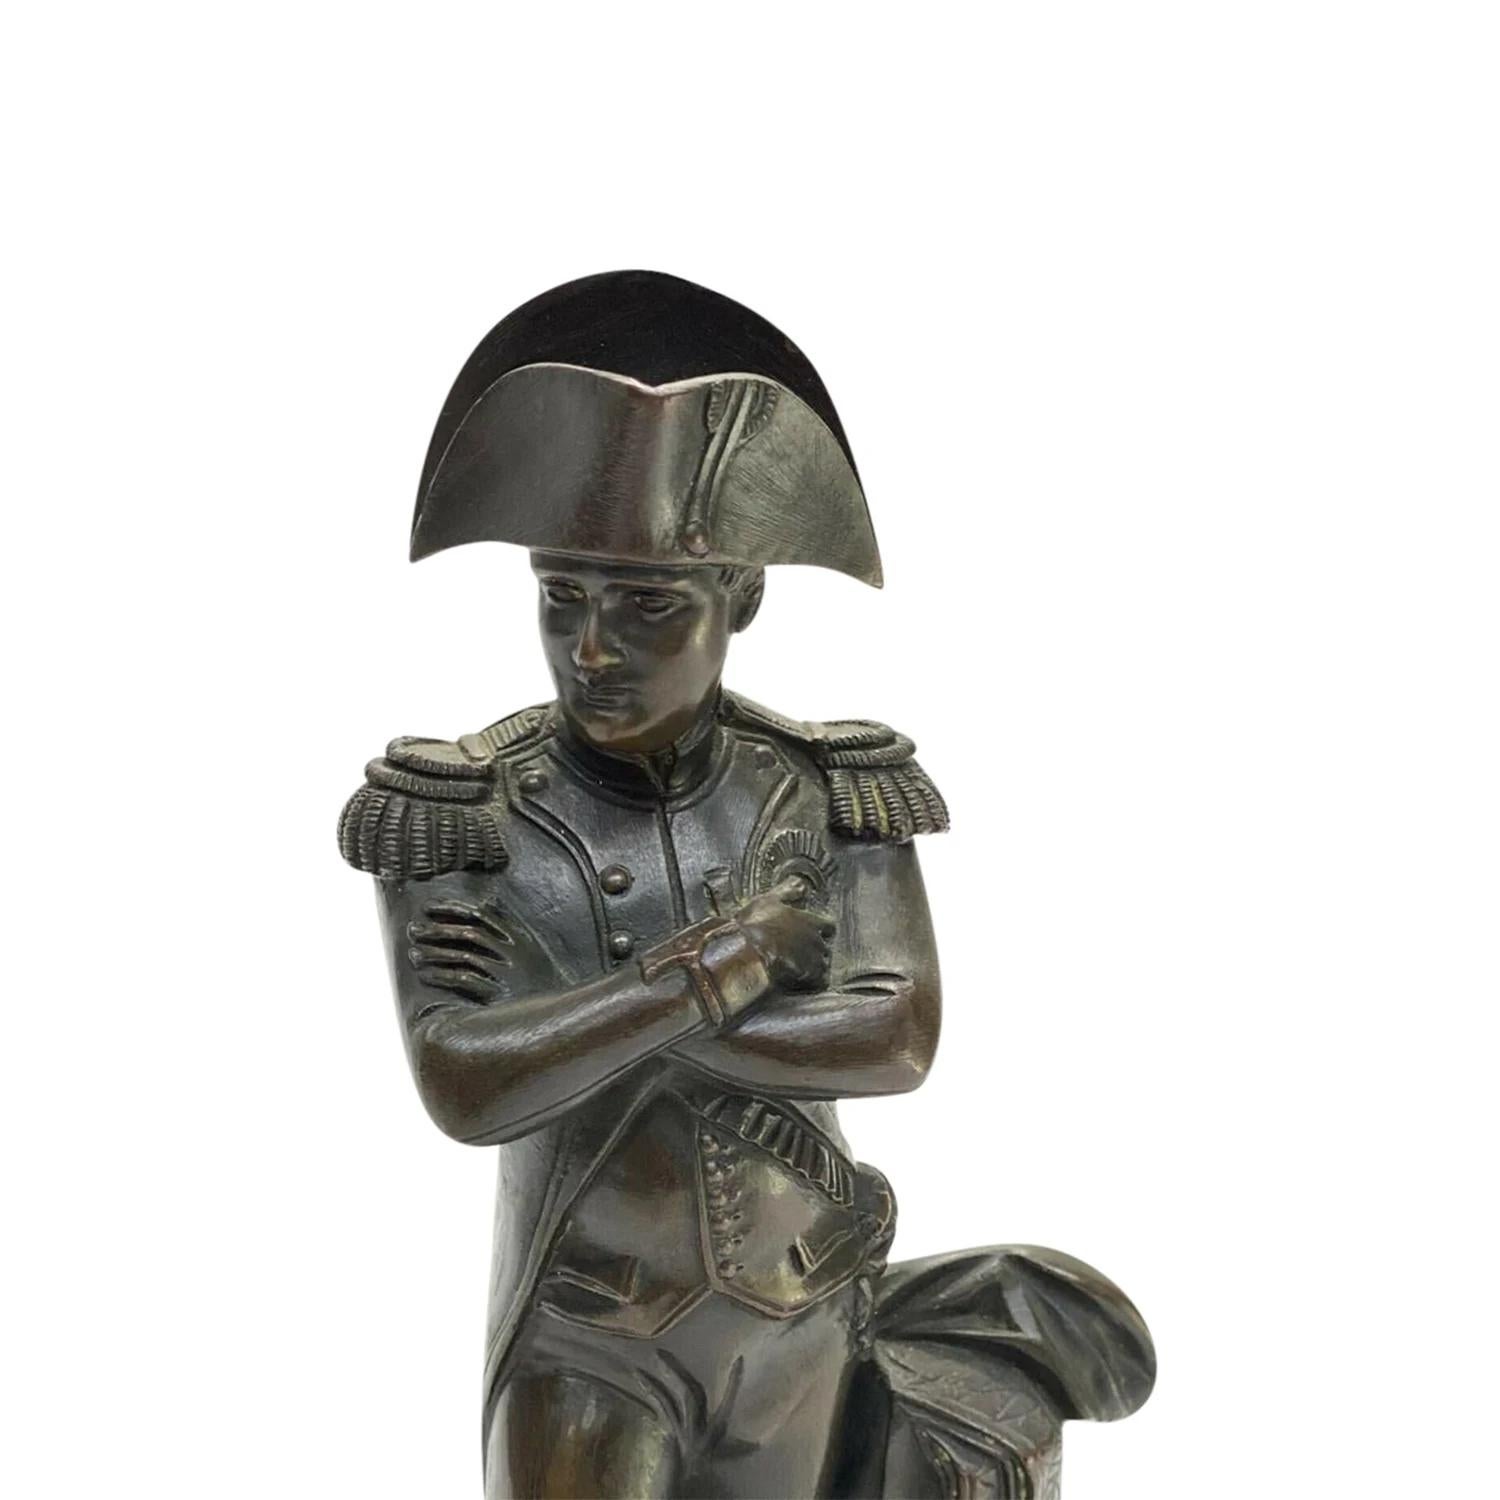 Schwarze antike französische Büste von Napoleon Bonaparte aus dem 19. Jahrhundert aus handgefertigter patinierter Bronze, in gutem Zustand. Die kleine Skulptur zeigt Napoleon in seiner militärischen Kleidung und in einer gebieterischen Haltung. Das